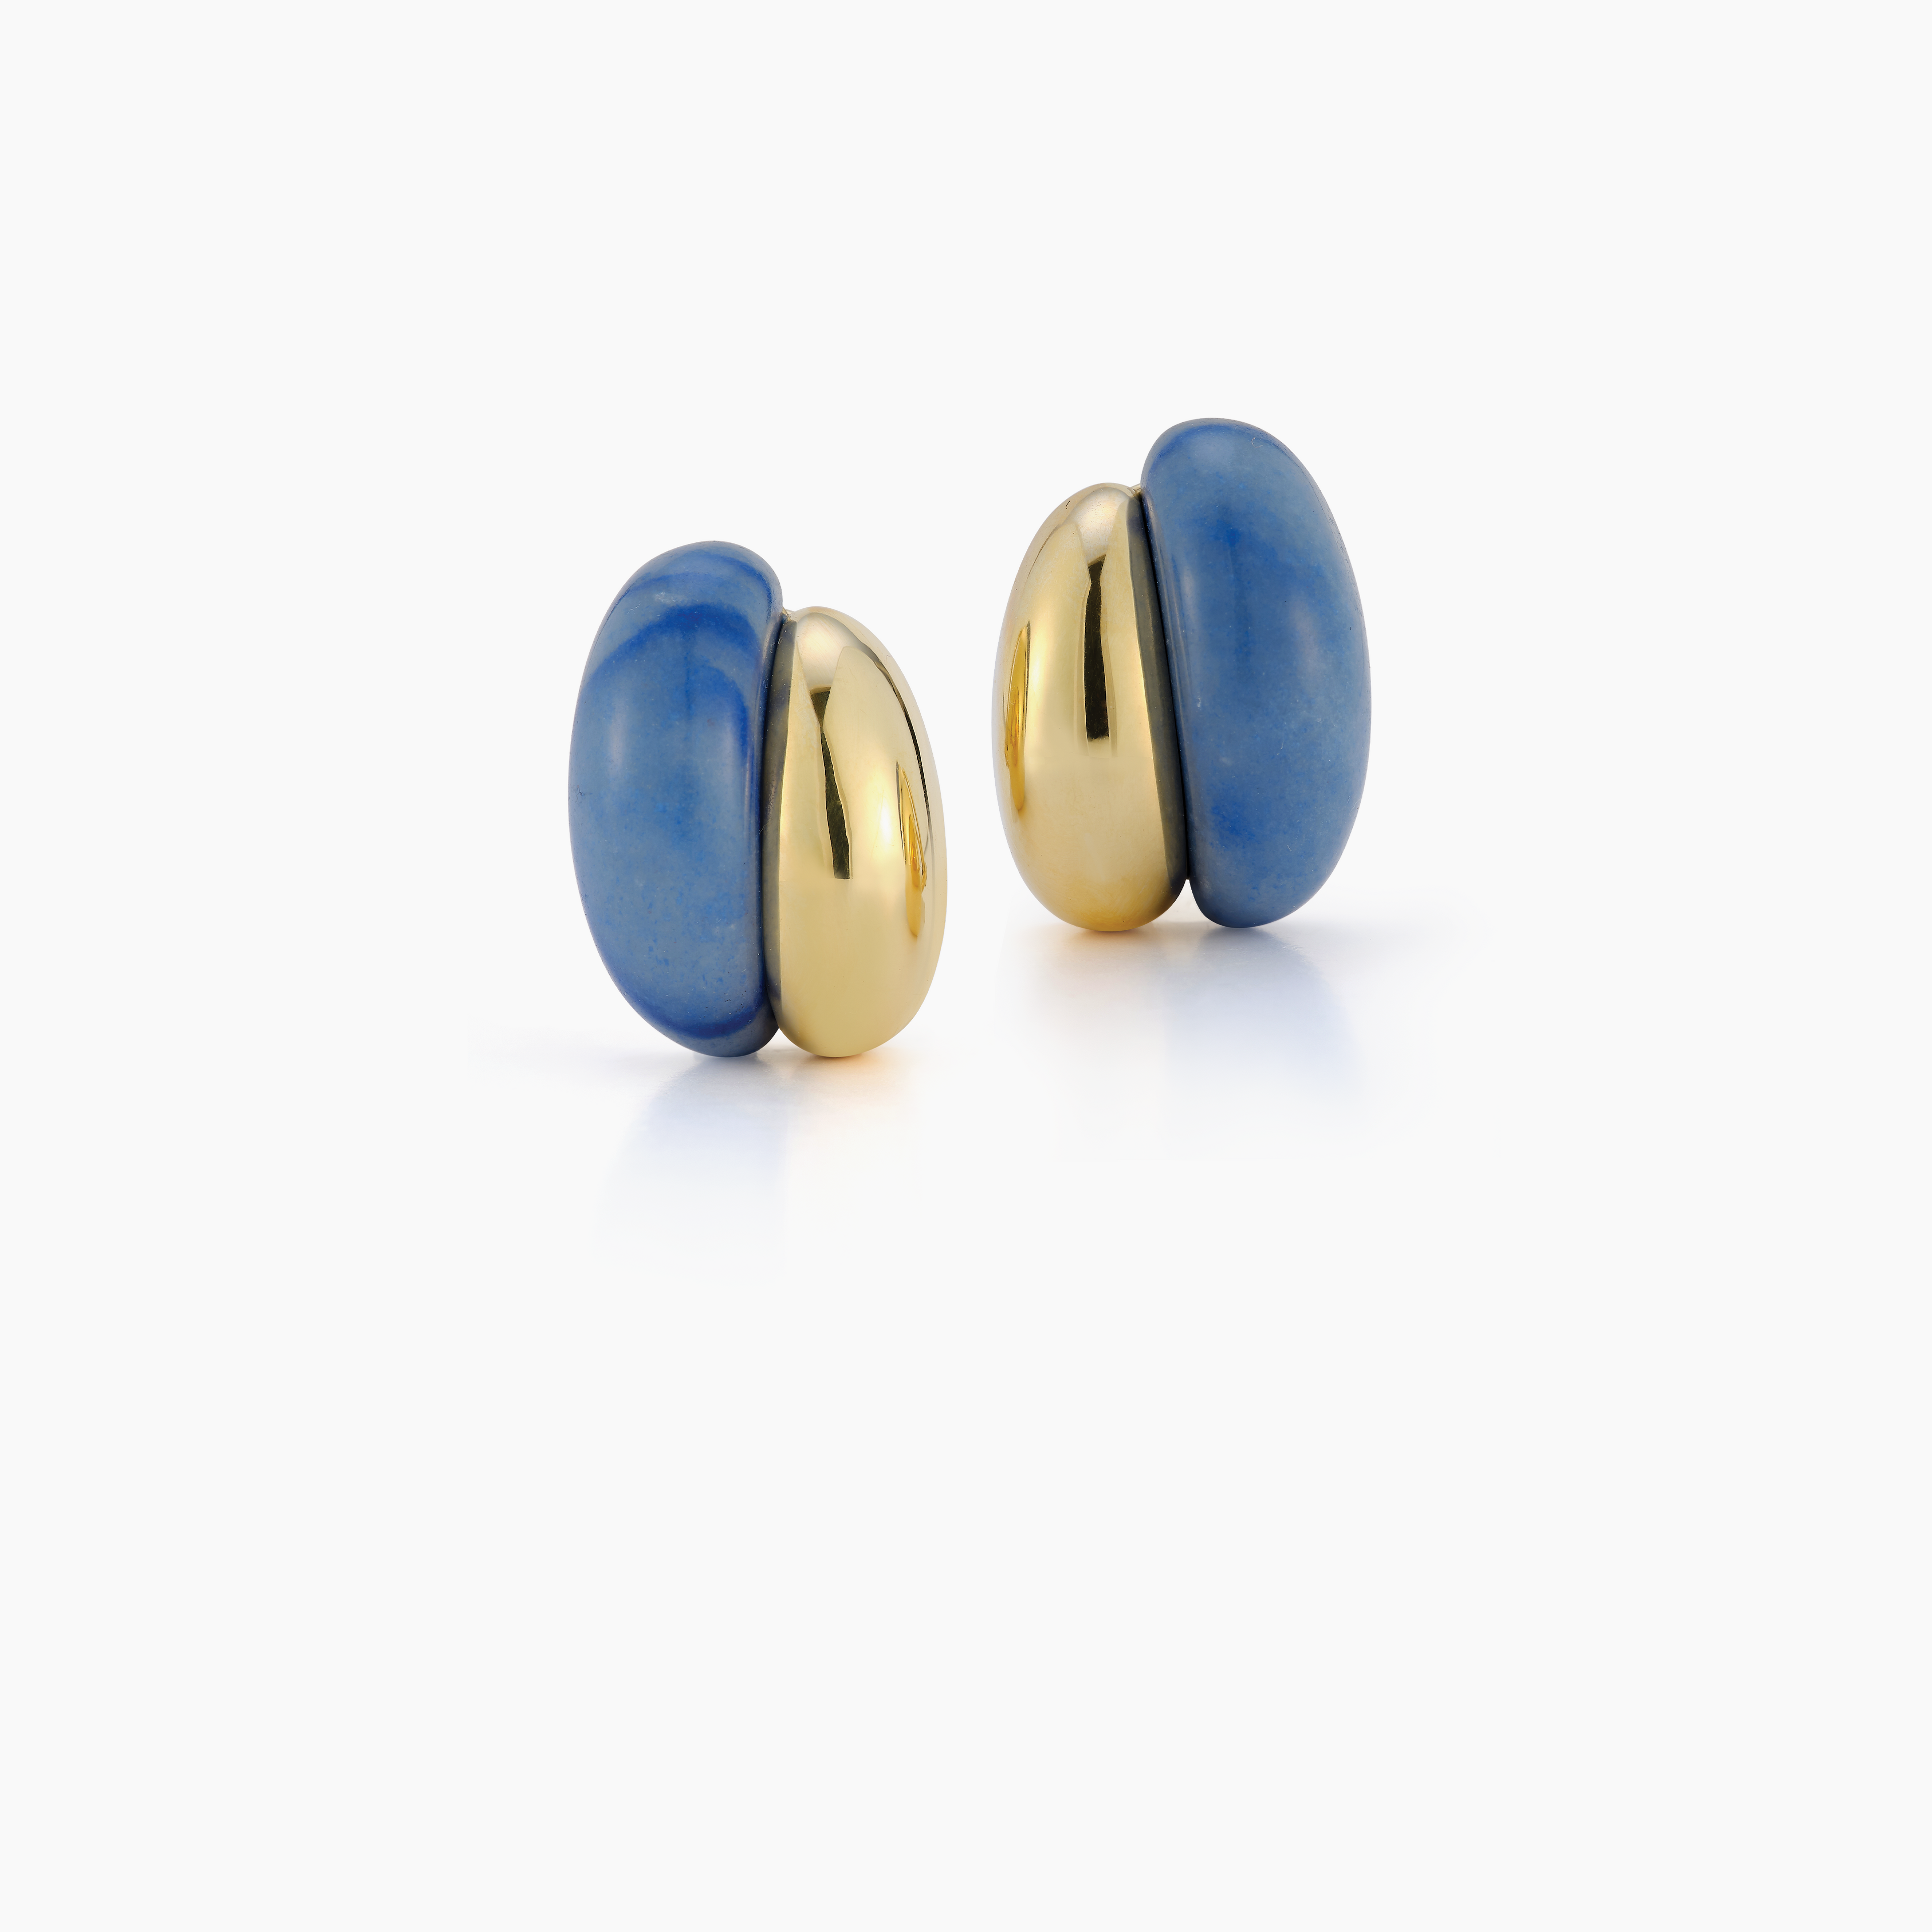 Silhouette Earrings in Blue Aventurine